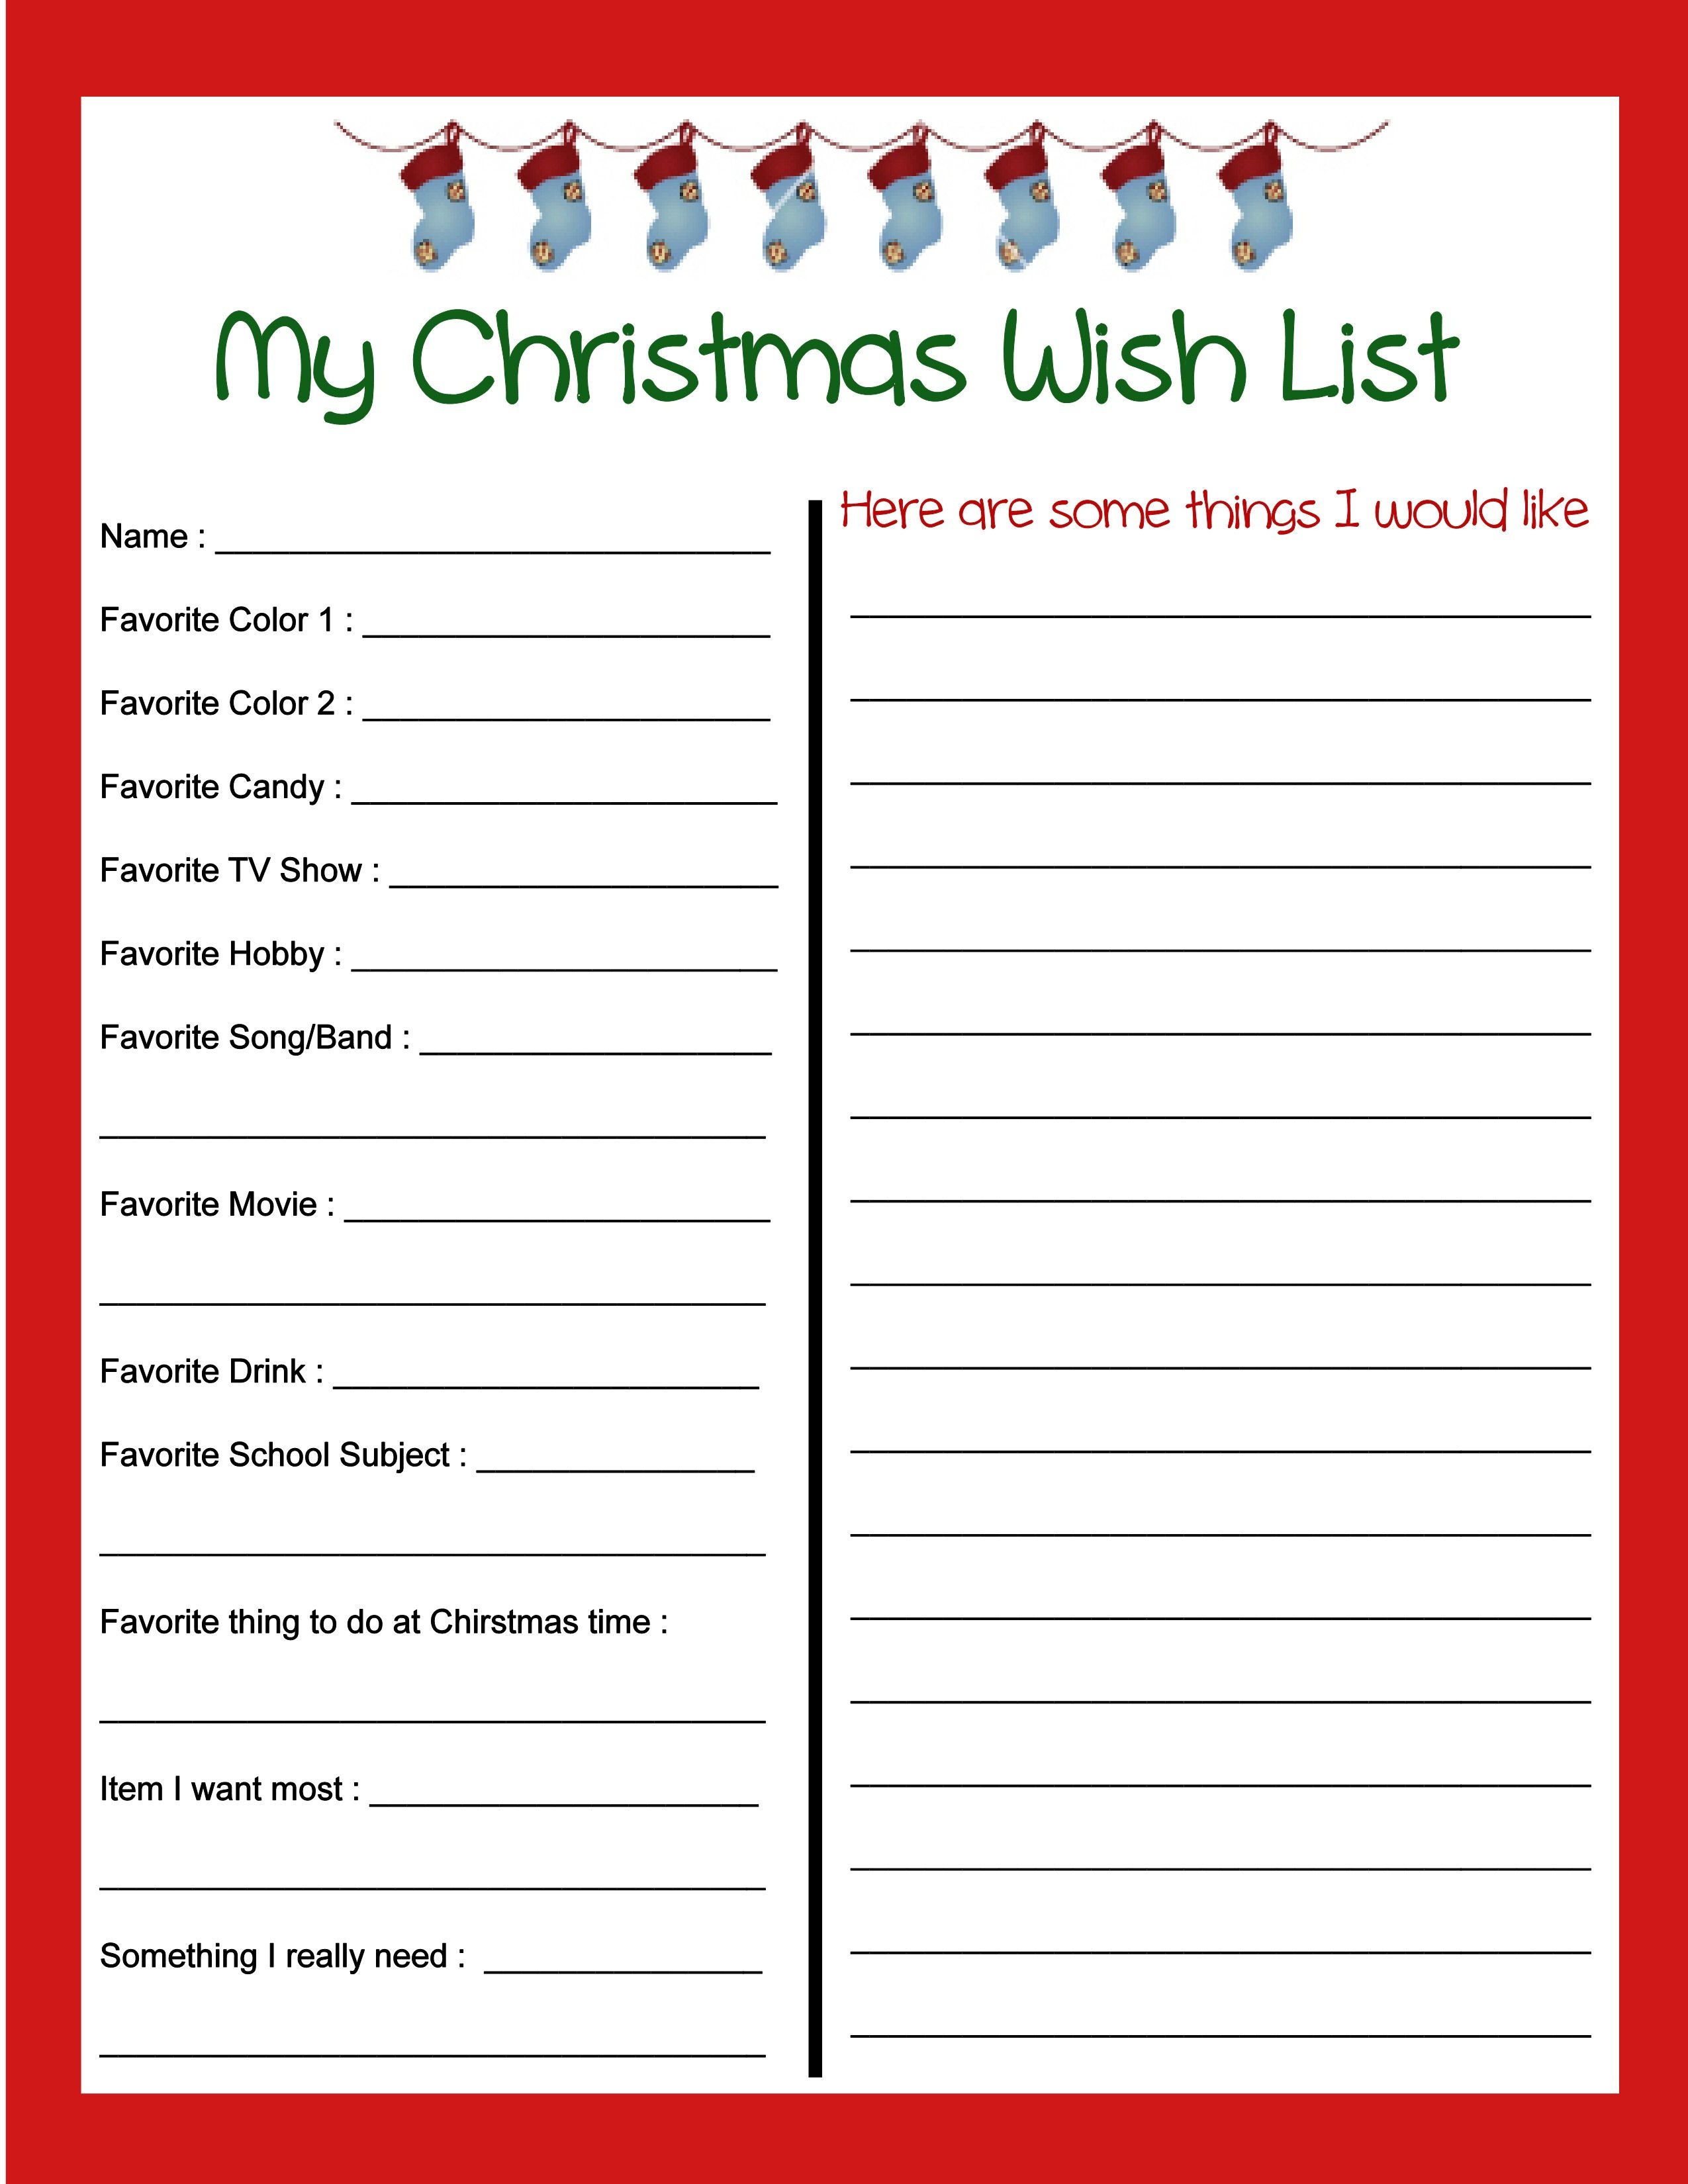 Pinbecky Stout On Christmas!!! | Christmas Wish List Template - Free Printable Christmas List